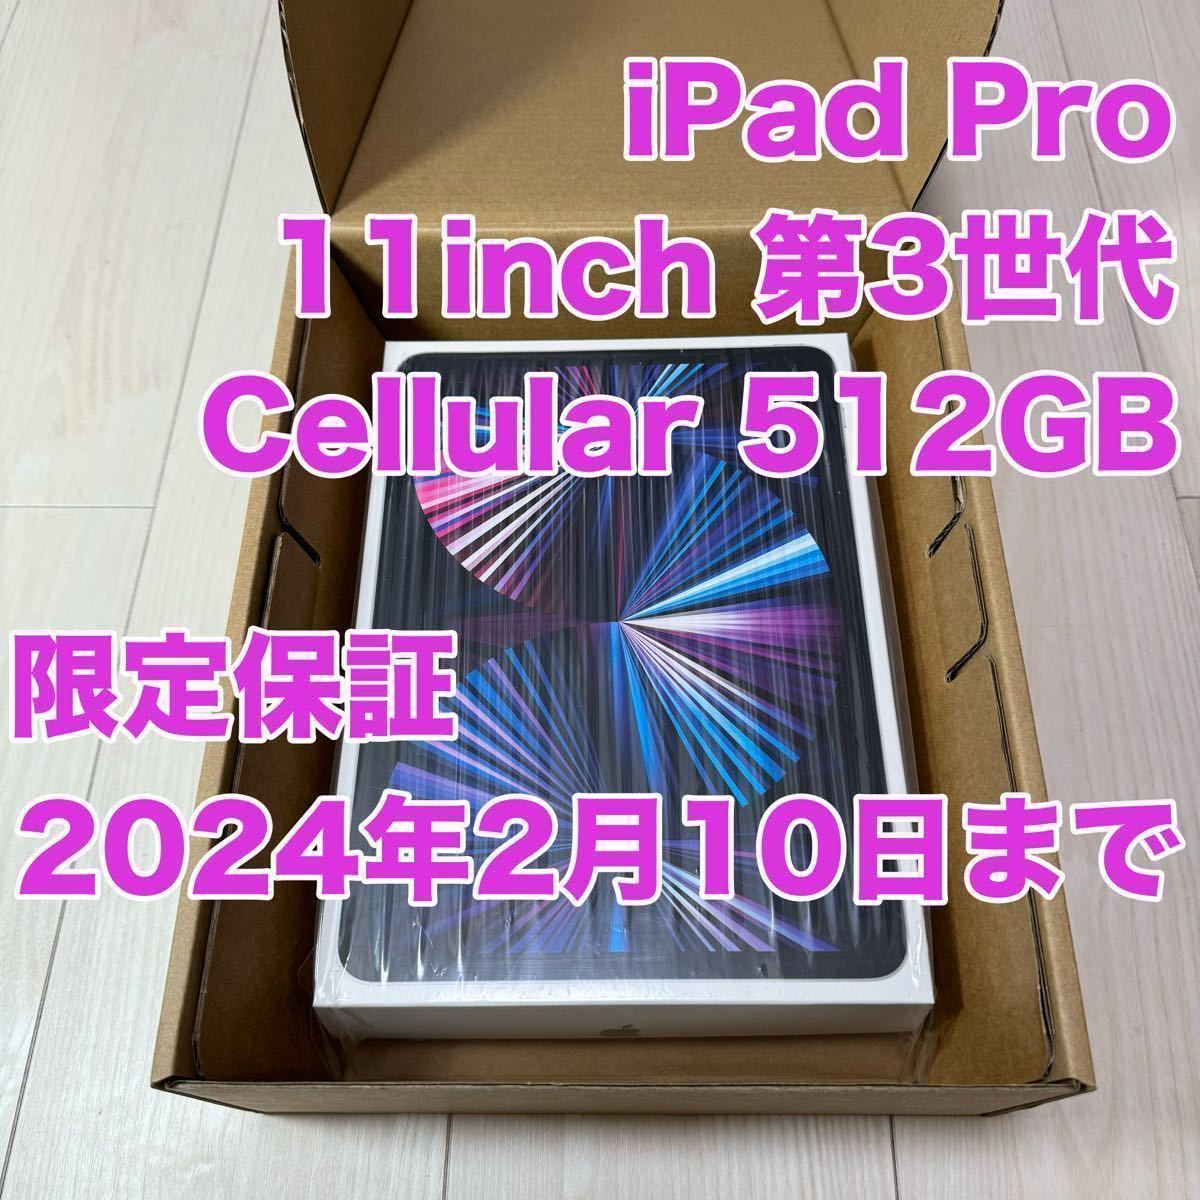 Apple アップル iPad Pro 11インチ 第3世代 512GB Wi-Fi + Cellular